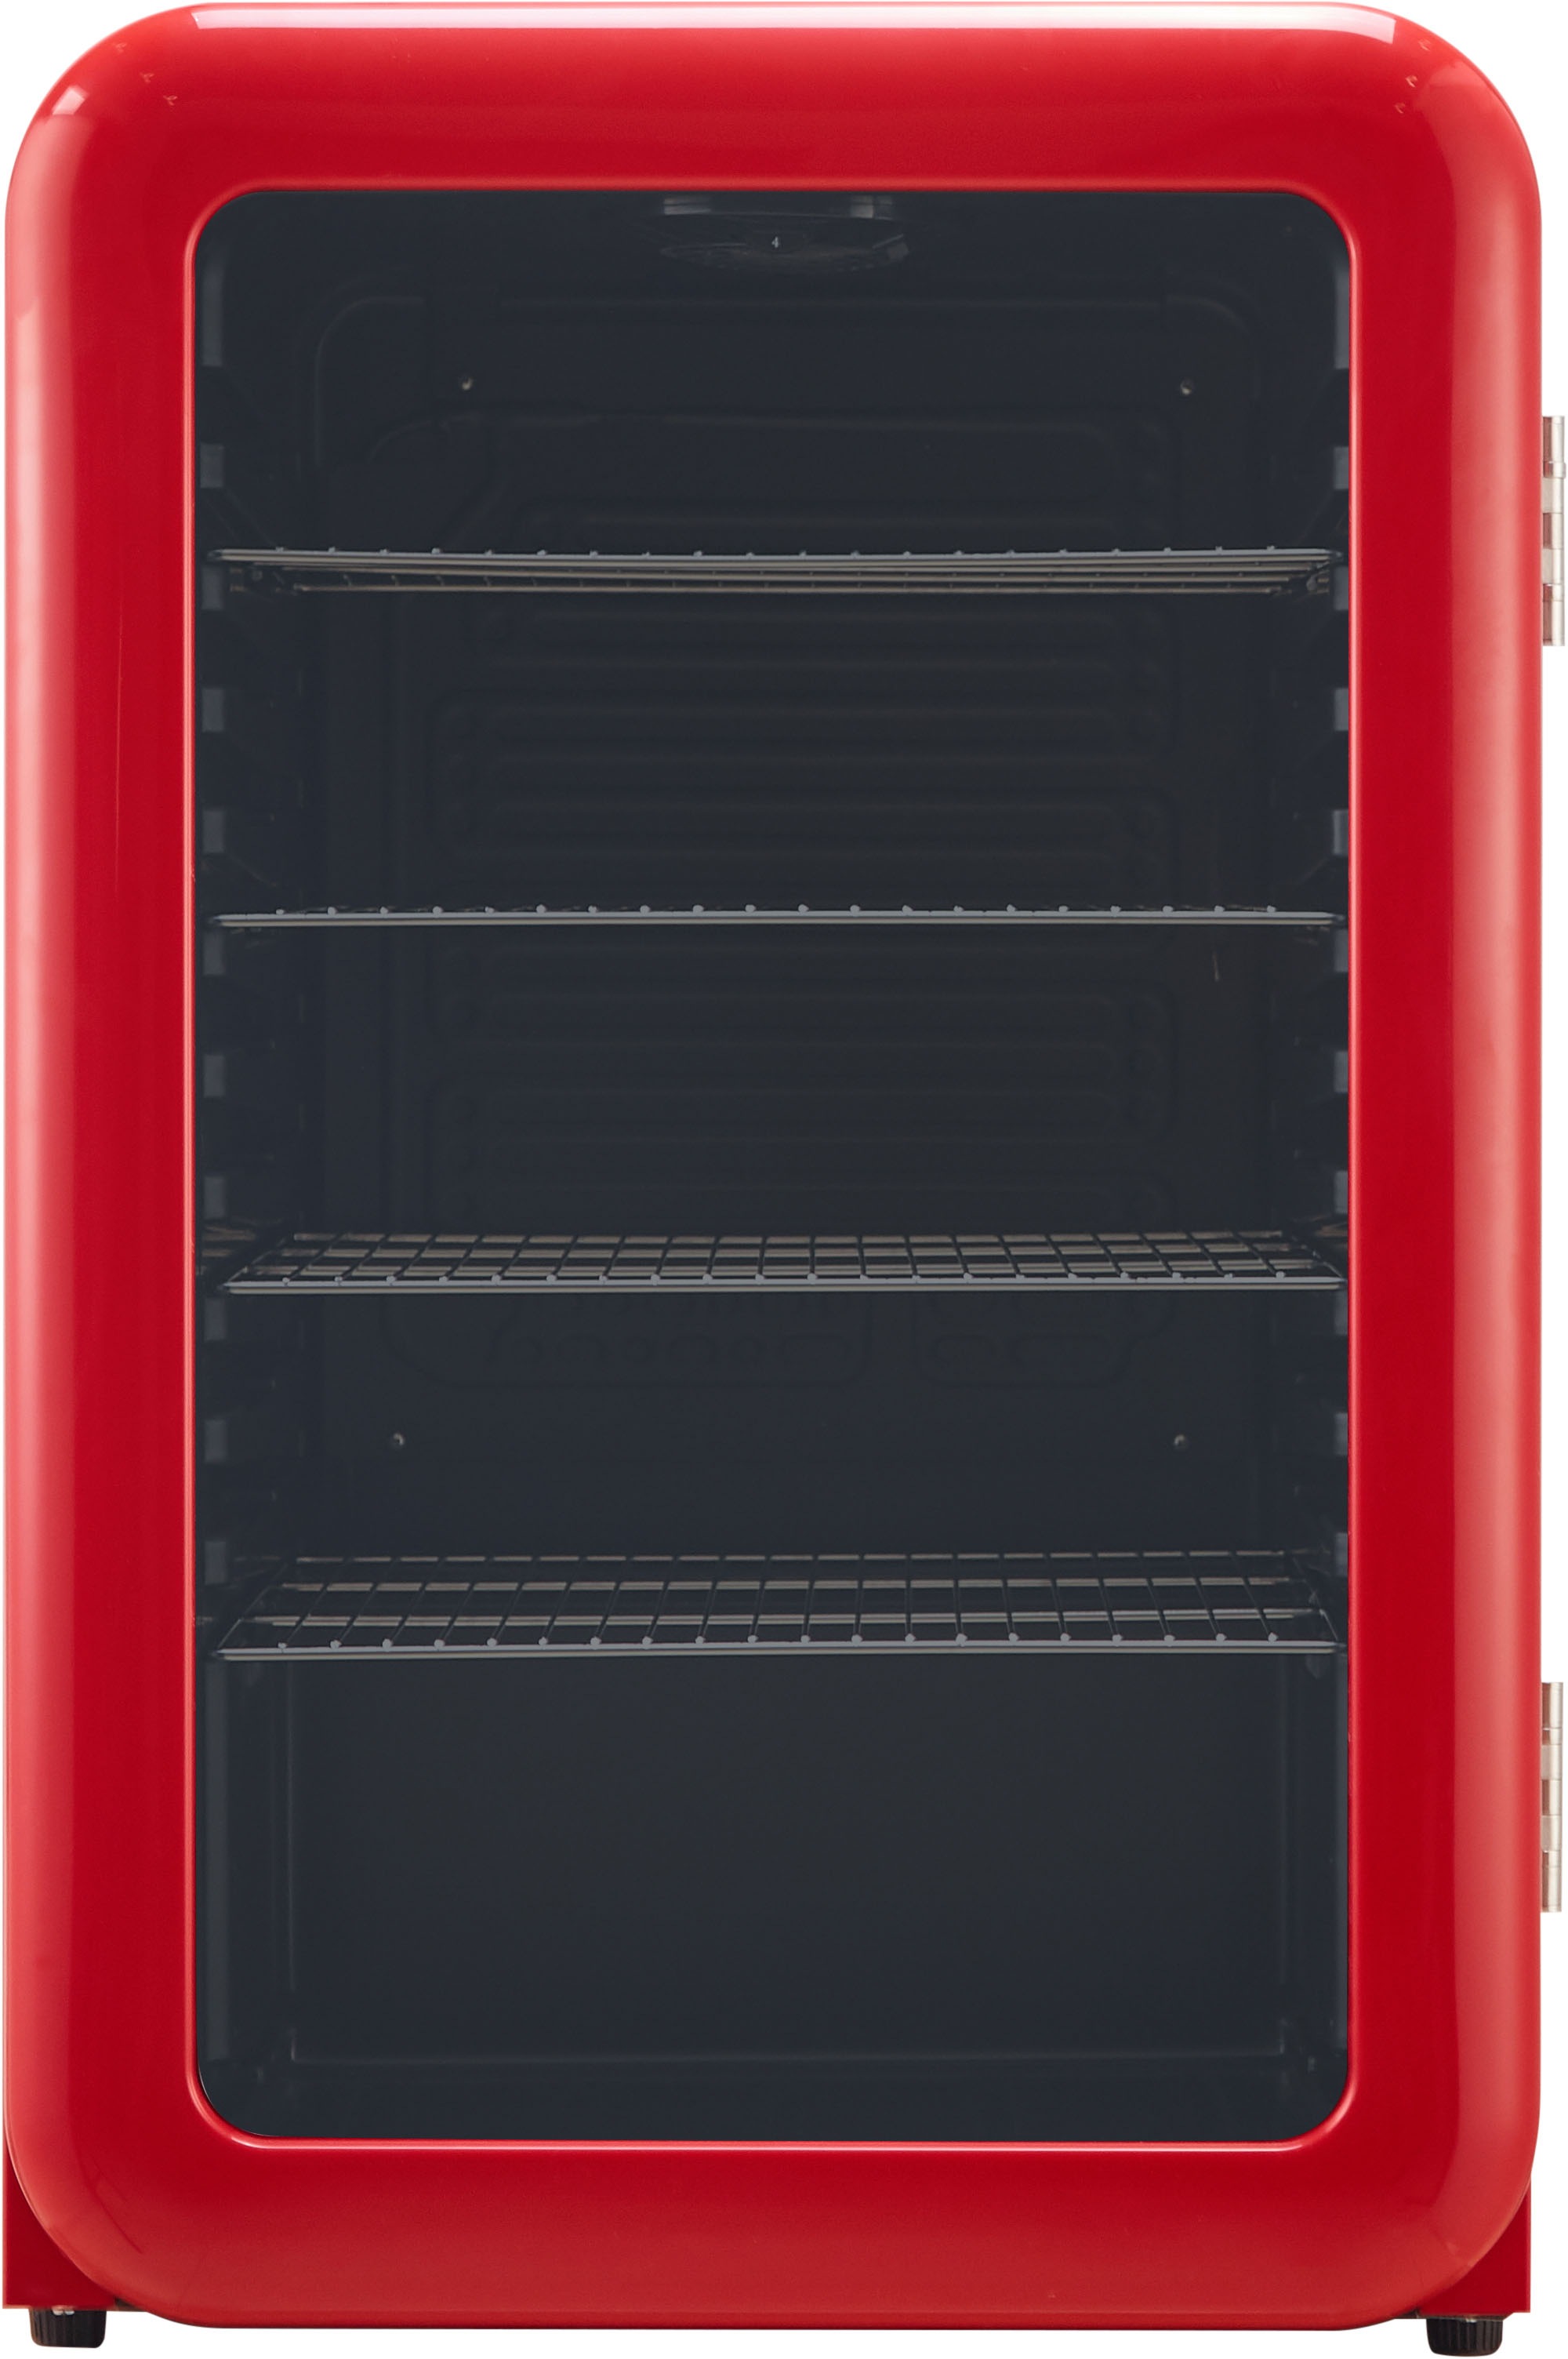 Hanseatic Getränkekühlschrank "HBC115FRRH red", HBC115FRRH, 83,5 cm hoch, 55 cm breit 2